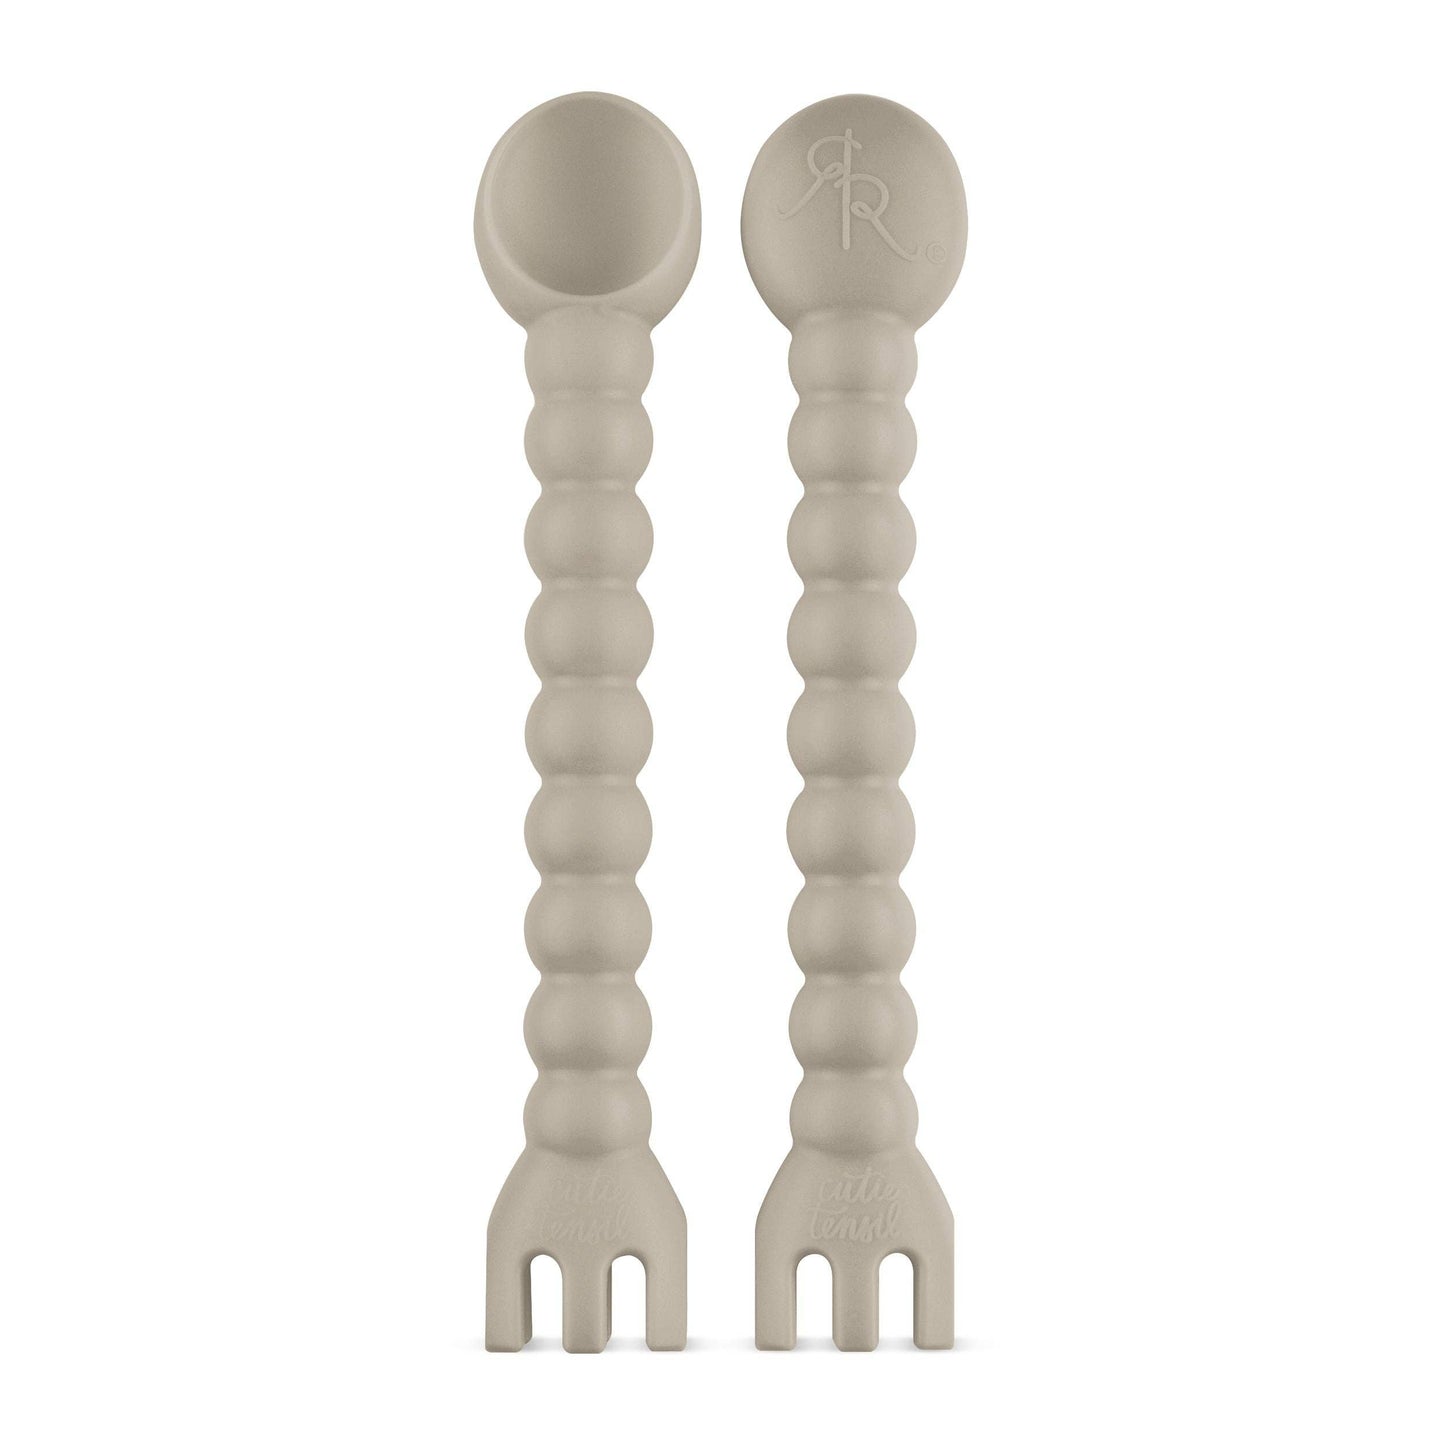 Cutie Tensils (Spoon & Fork Set)